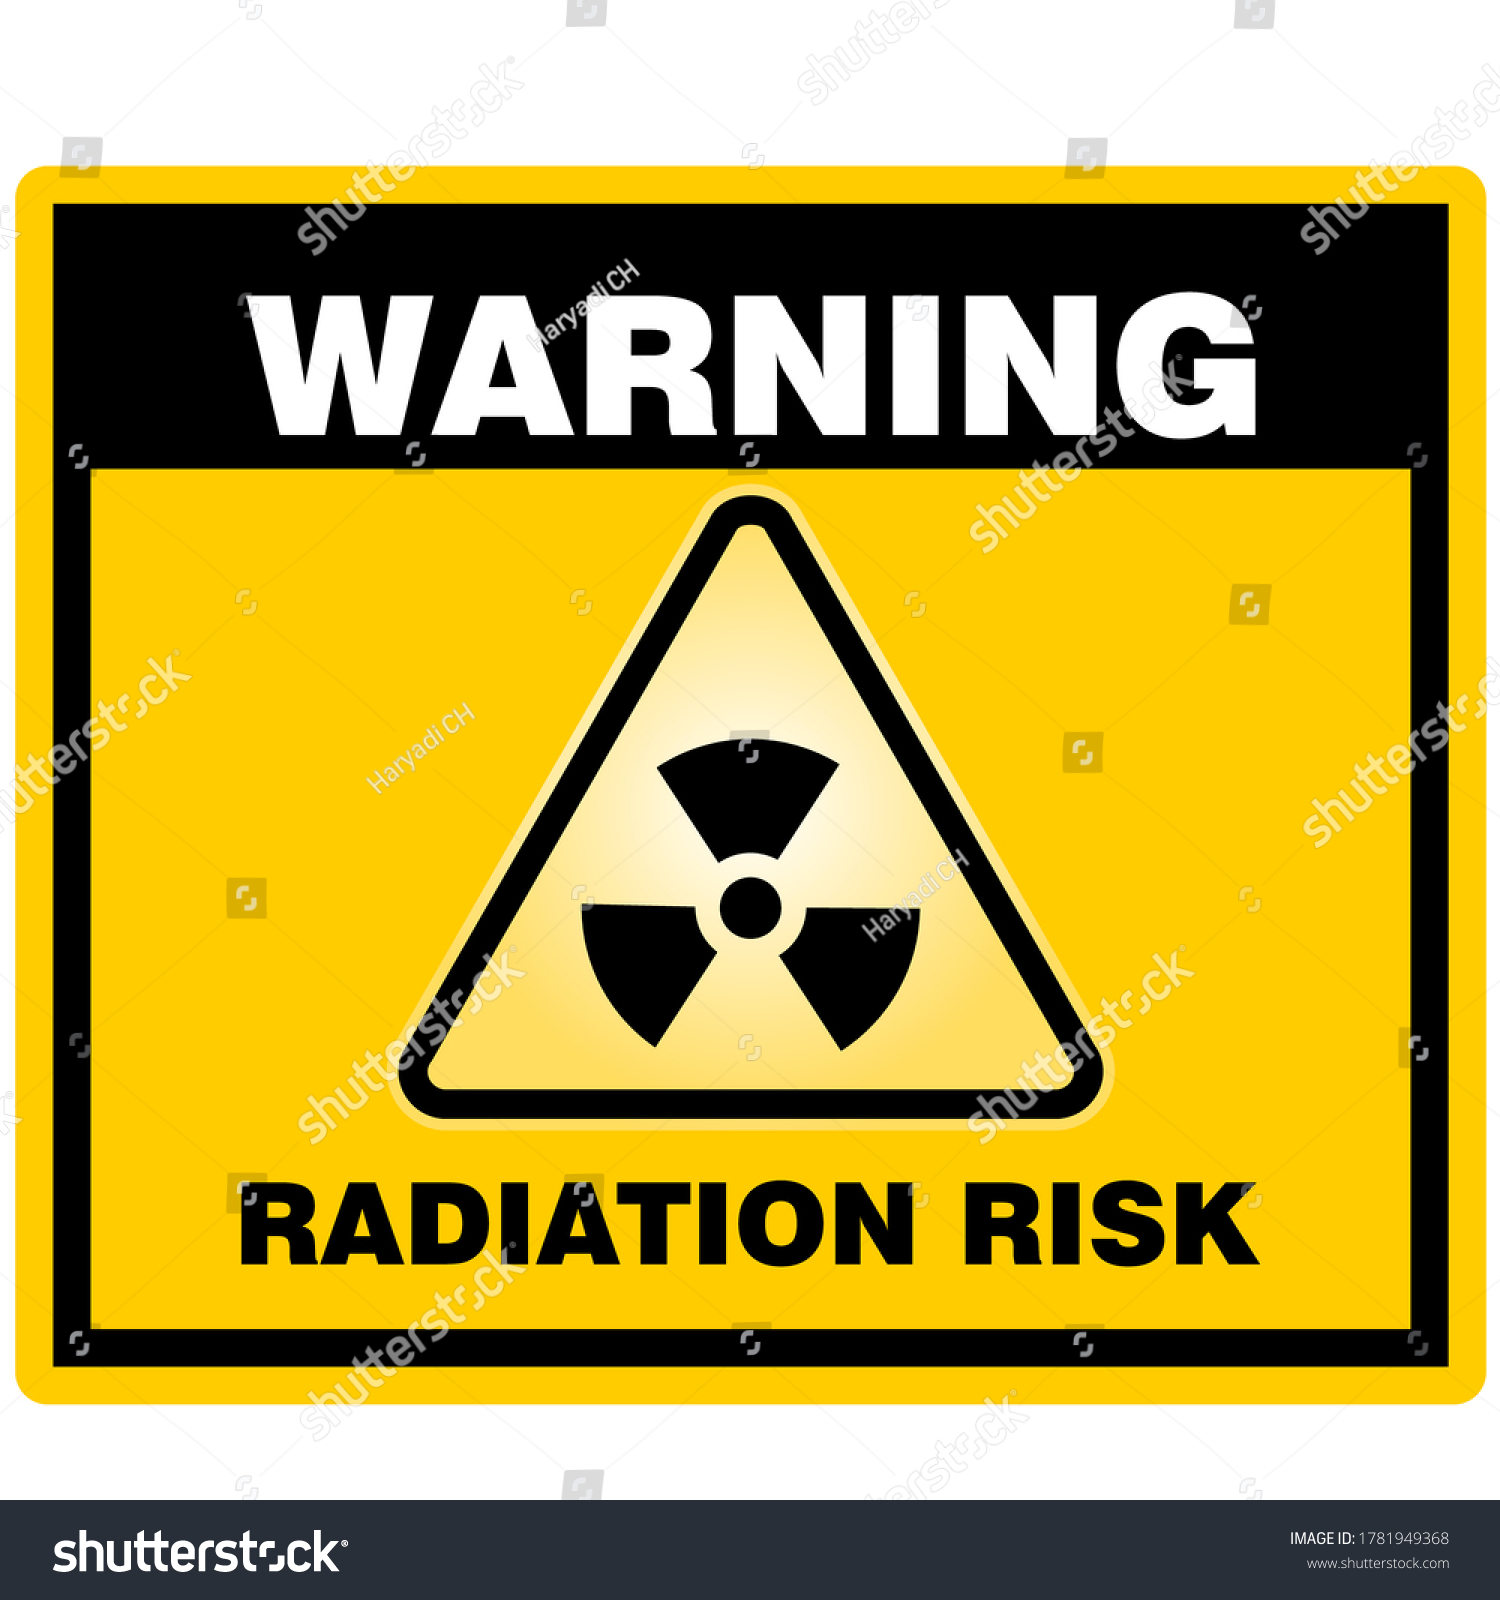 Warning Radiation Risk Sign Sticker Vector Stock Vector (Royalty Free ...